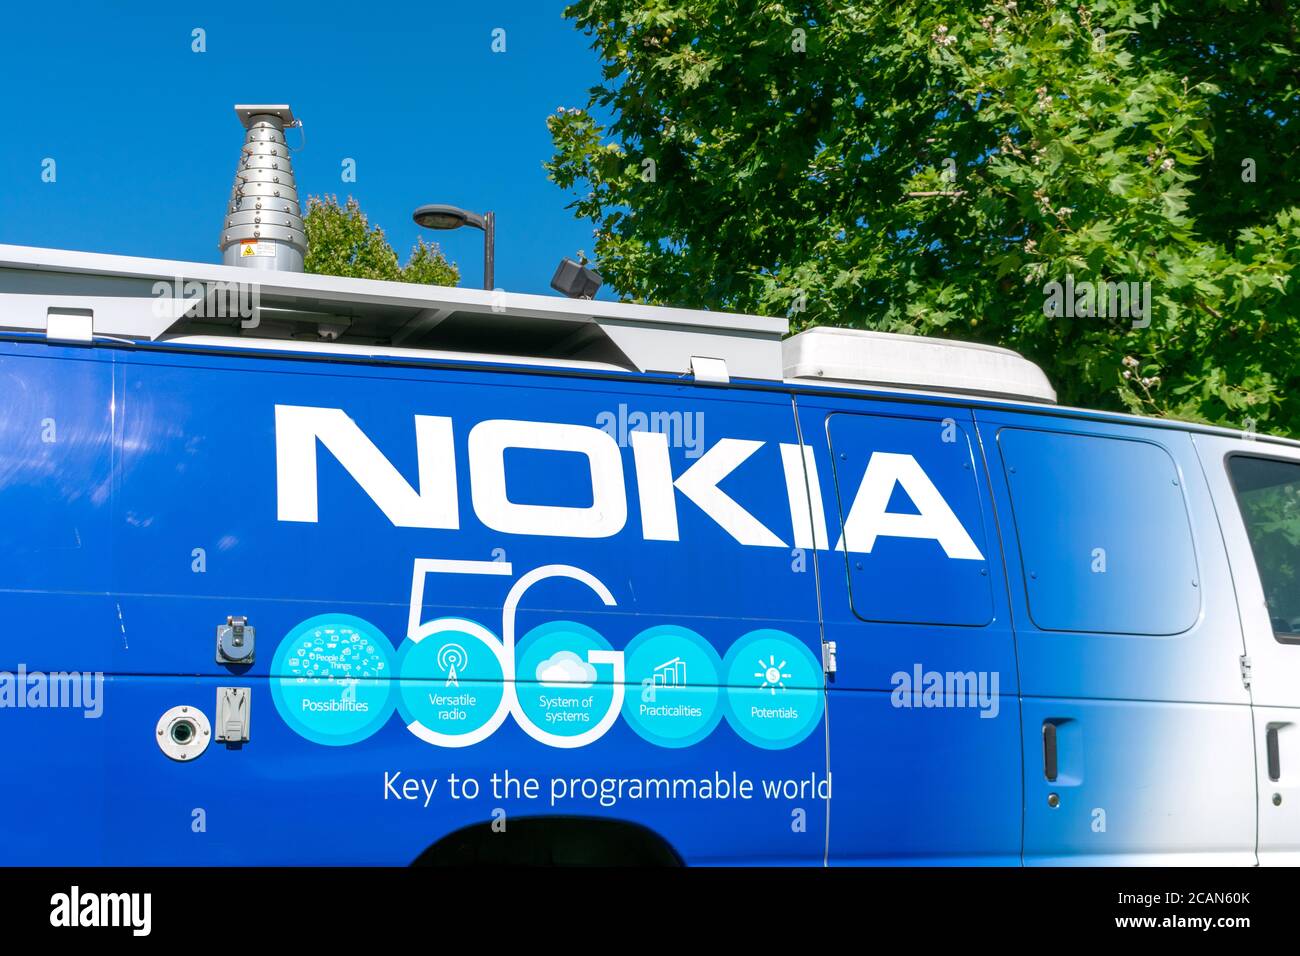 Nokia 5G Wireless-Netzwerk-Architektur-Fähigkeiten Zeichen auf dem Fahrzeug mit Teleskop 5G-Antenne - San Jose, Kalifornien, USA - 2020 Stockfoto